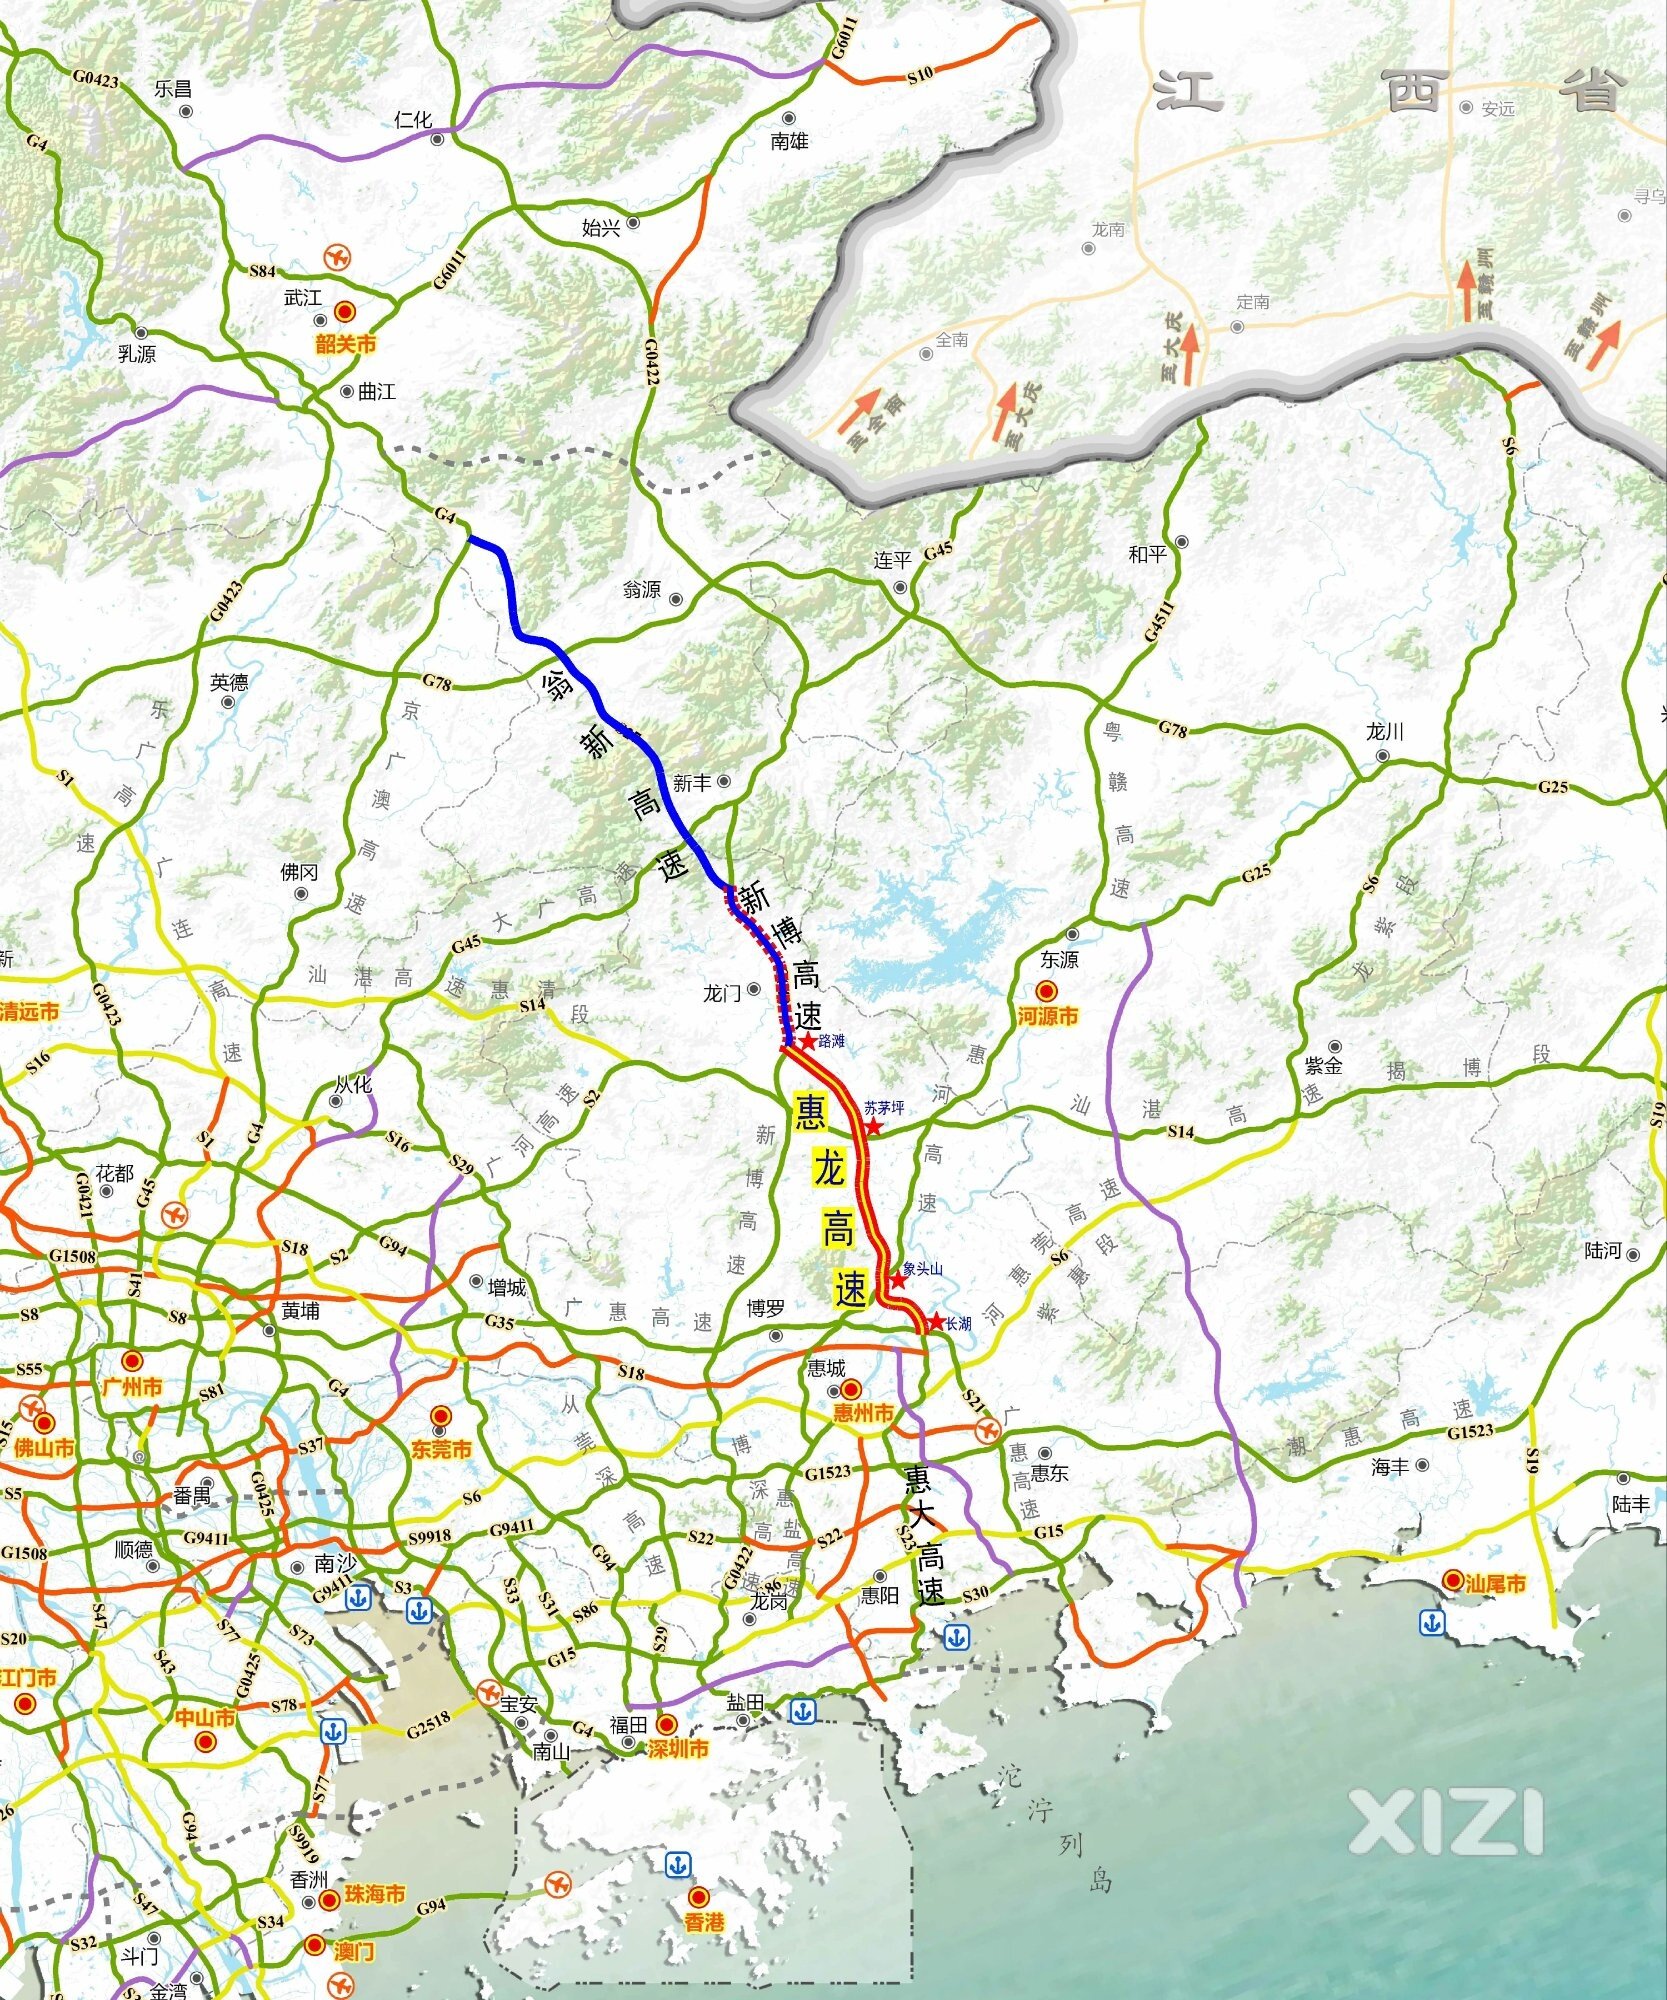 惠州最新高速公路规划图:5年内惠东在建和近期动工的高速公路汇总